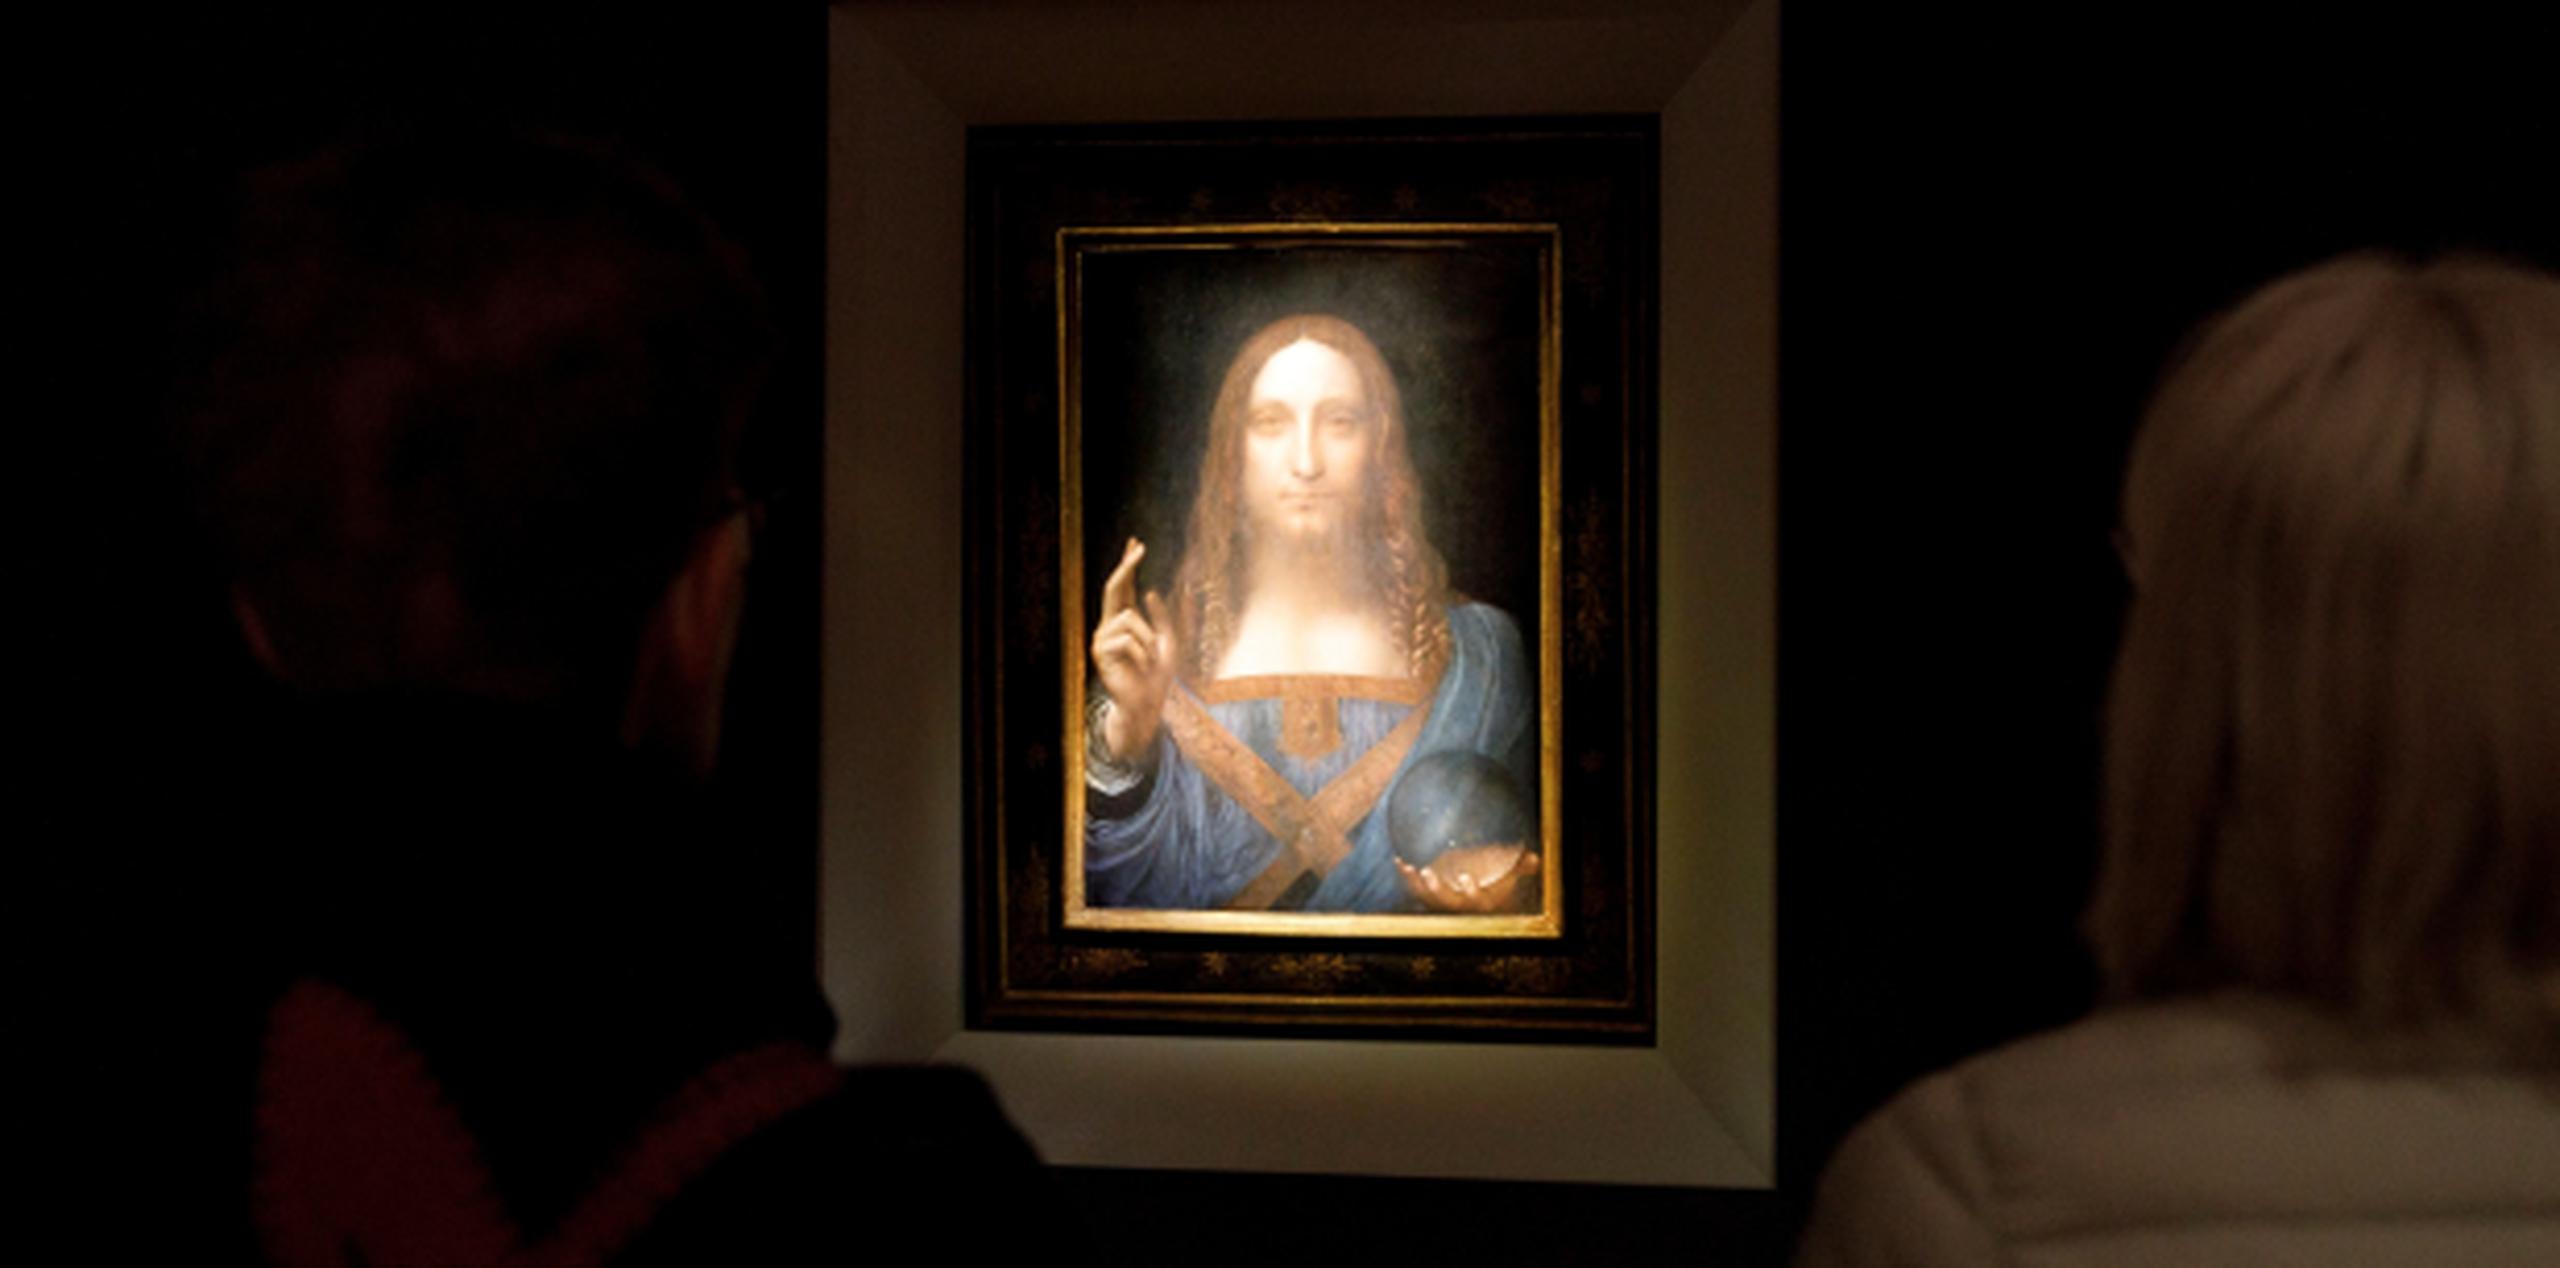 Varias personas observan en Nueva York la obra "Salvator Mundi" del artista Leonardo da Vinci, durante una vista previa pública antes de que la casa Christie's lo subastara. (EFE/ Justin Lane)